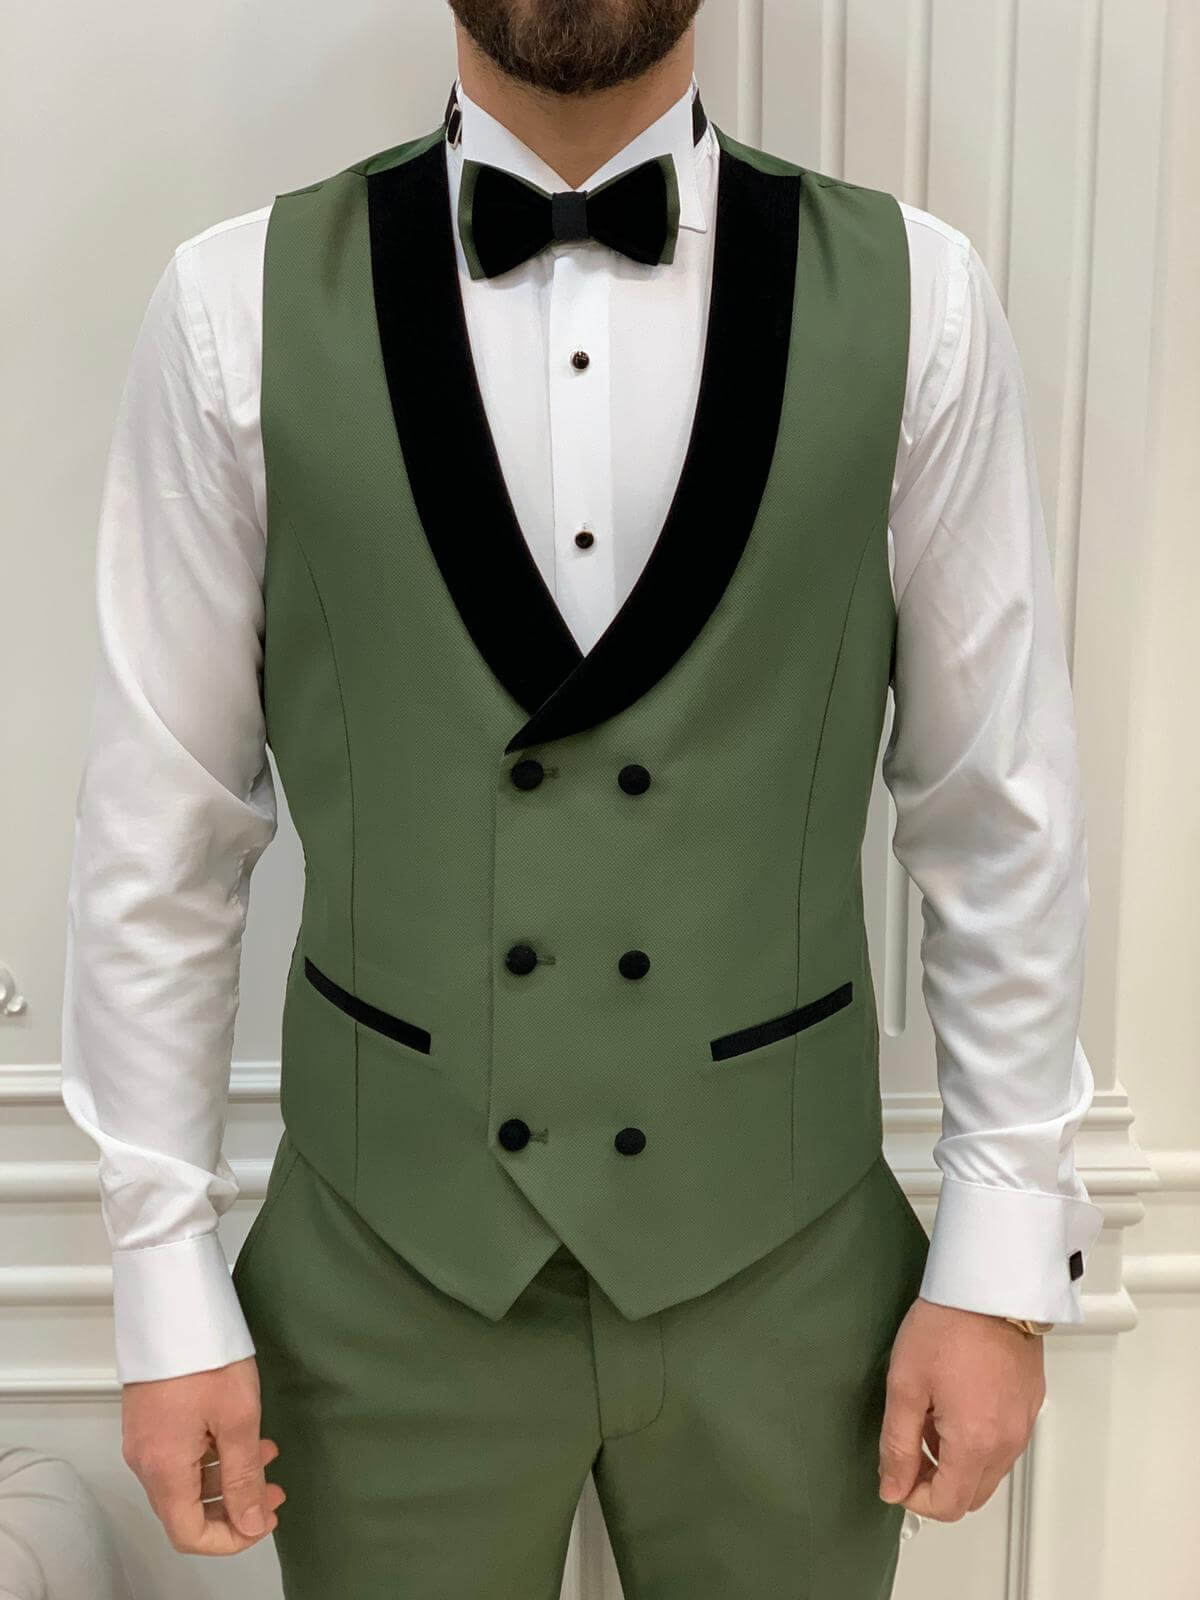 The Bold Green Prom Tuxedo from HolloMen